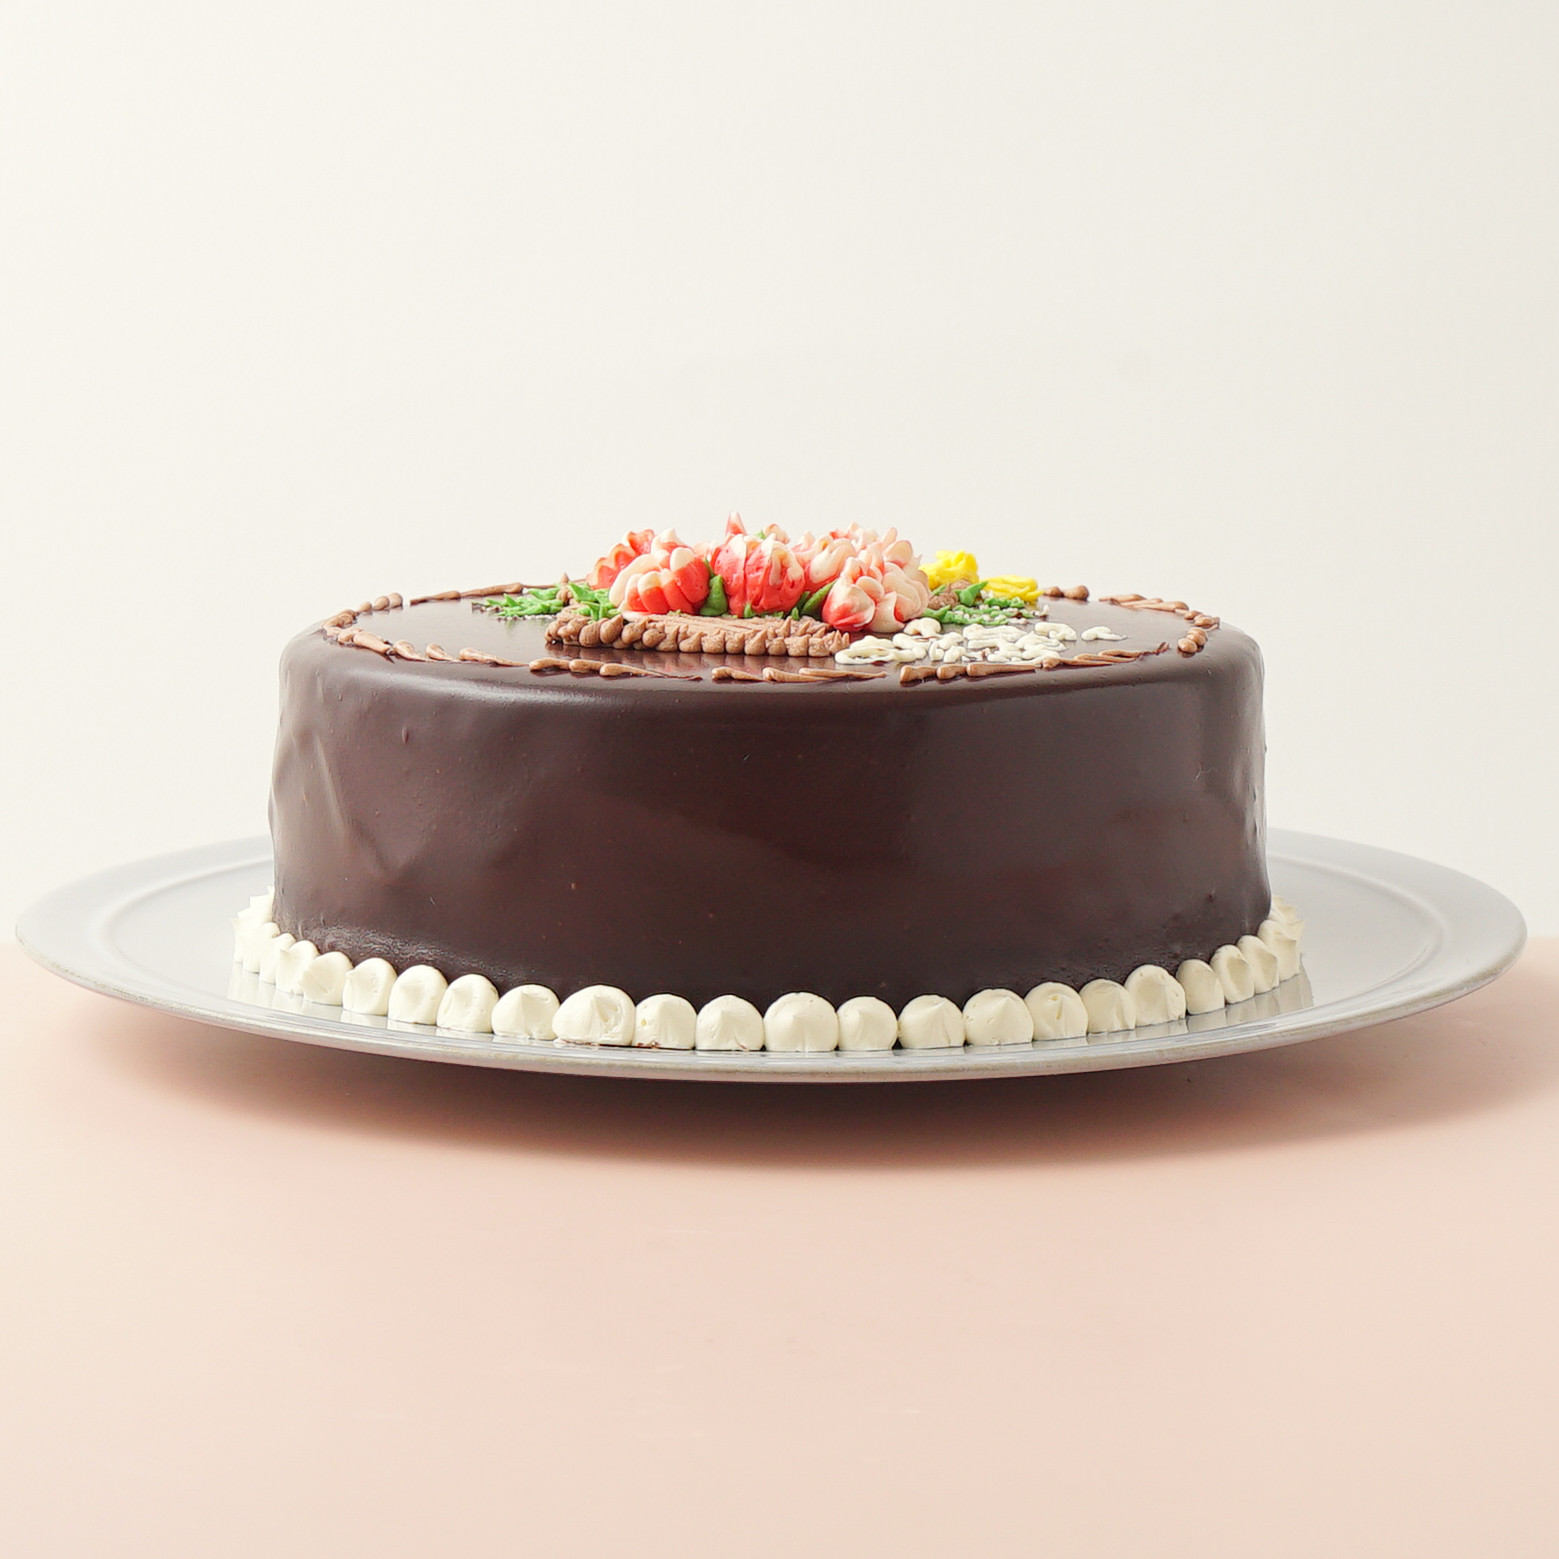 カーネーションのチョコレートクリームデコレーション 《Cake.jp限定》 4